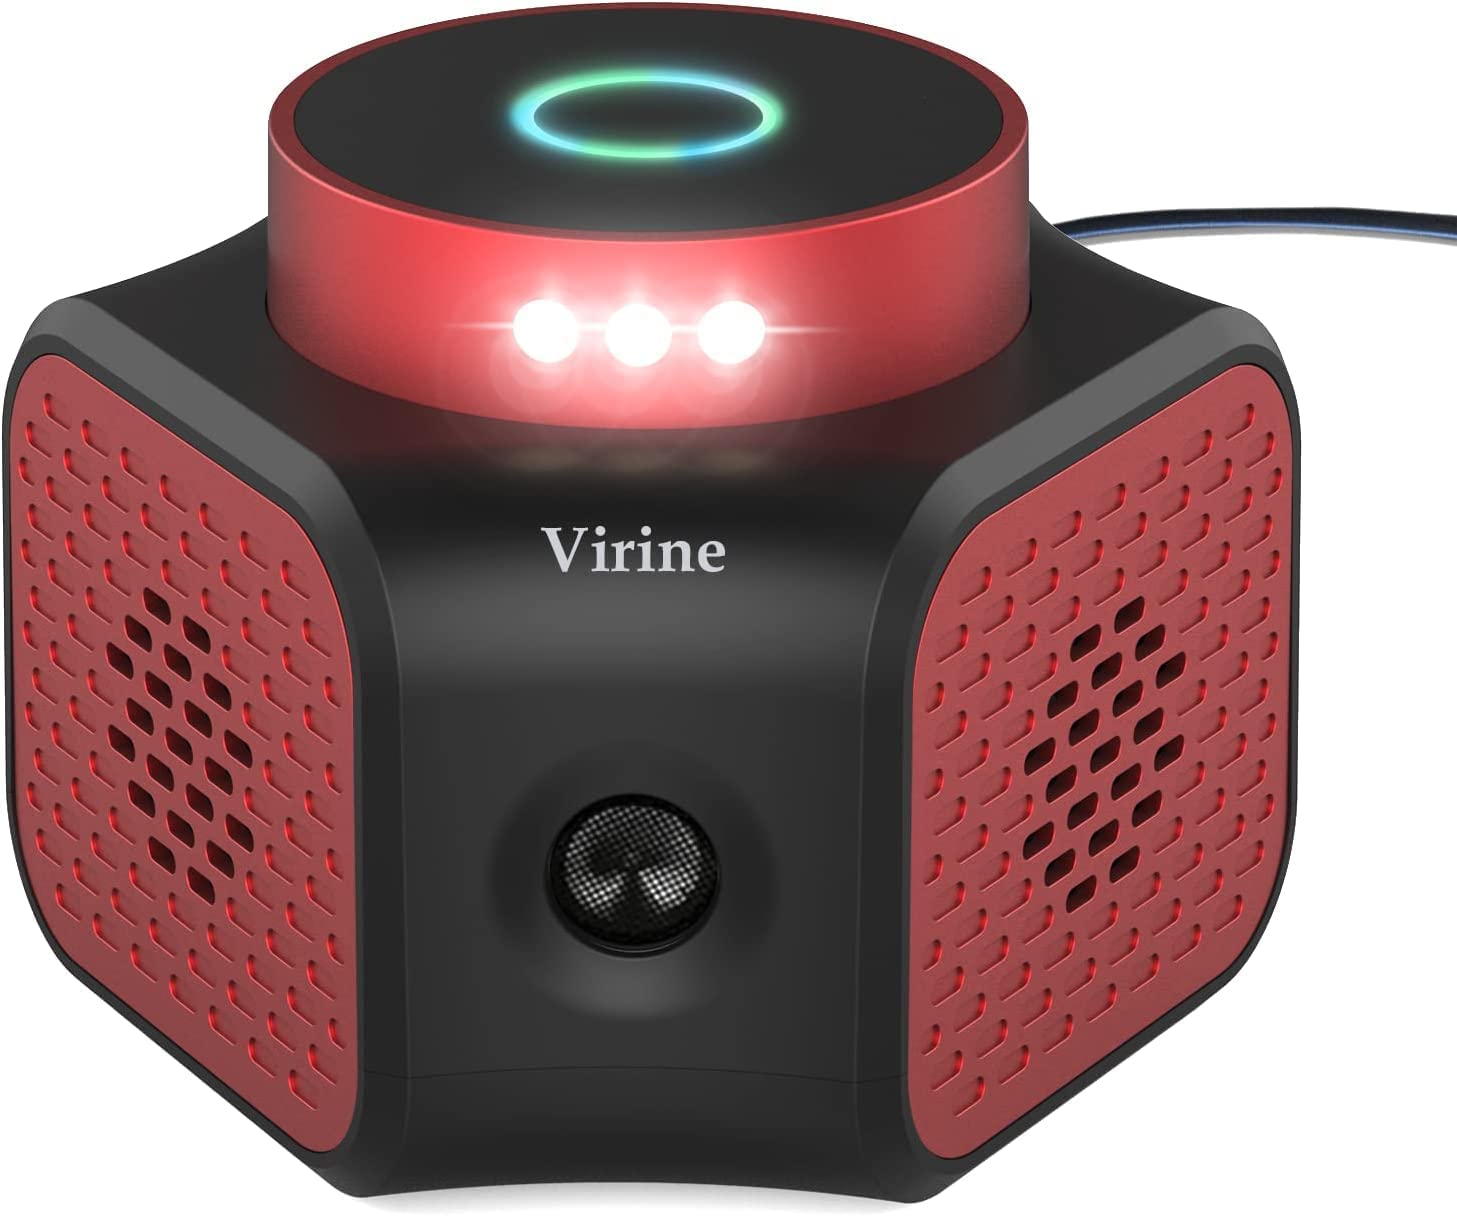 Virine Kid Friendly Light Sensor Indoor & Outdoor Pest Deterrent